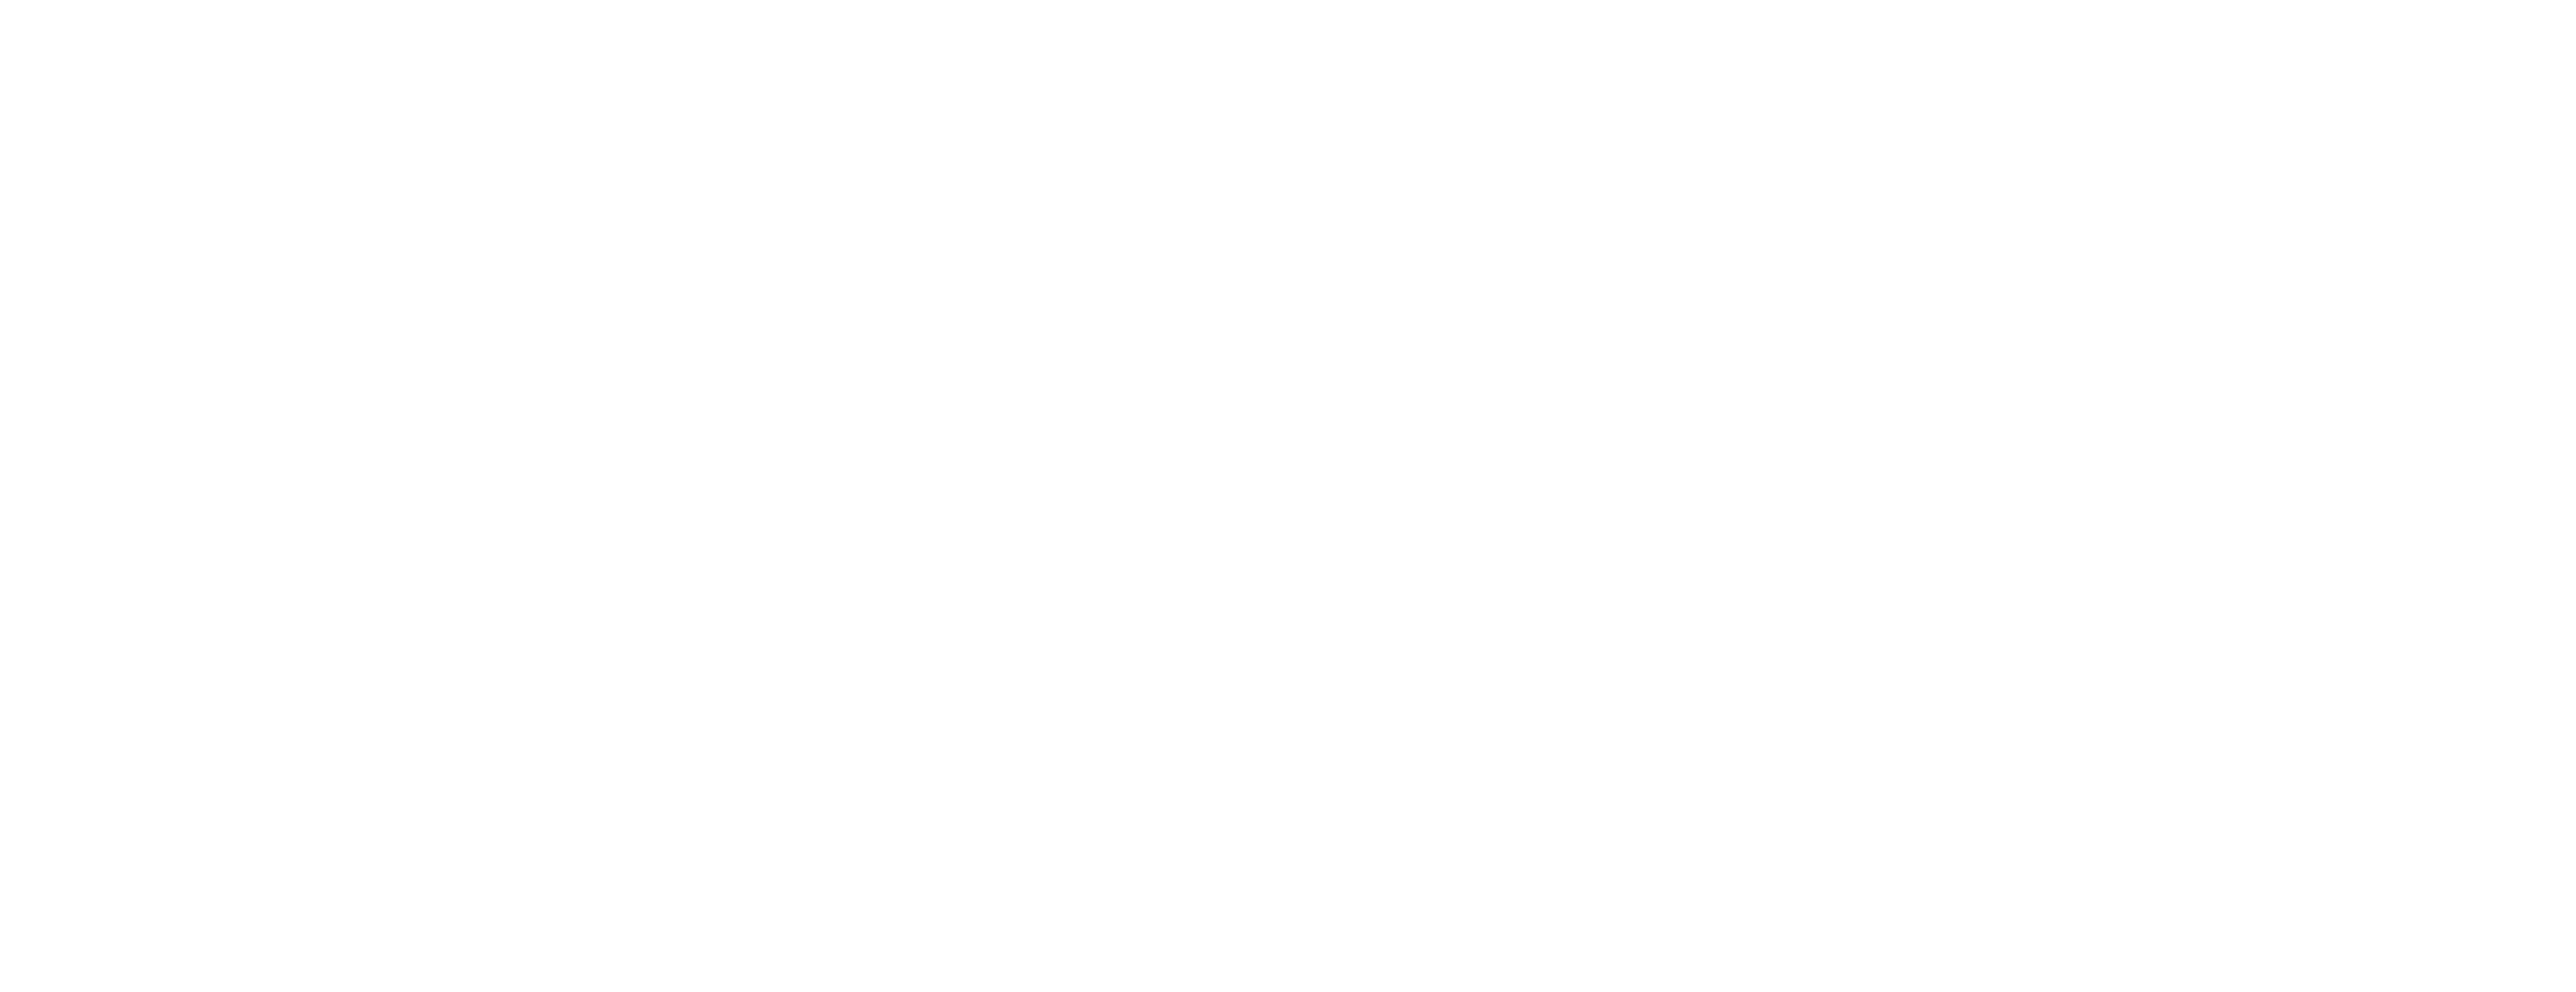 Transpotec 2024, 8-11 maggio